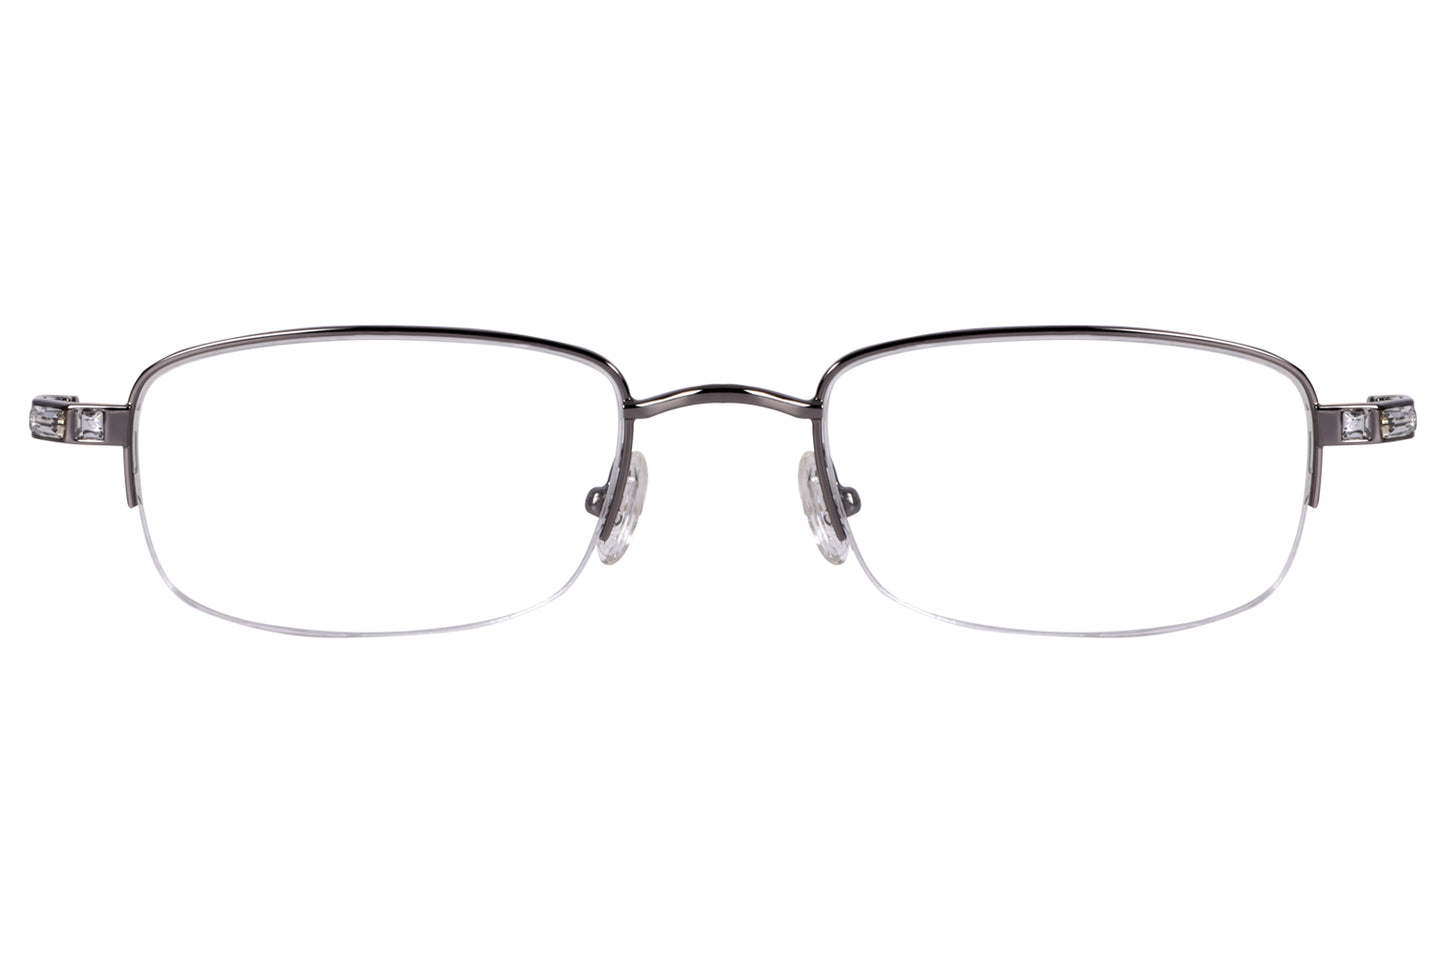 Unisex Glasses Frame